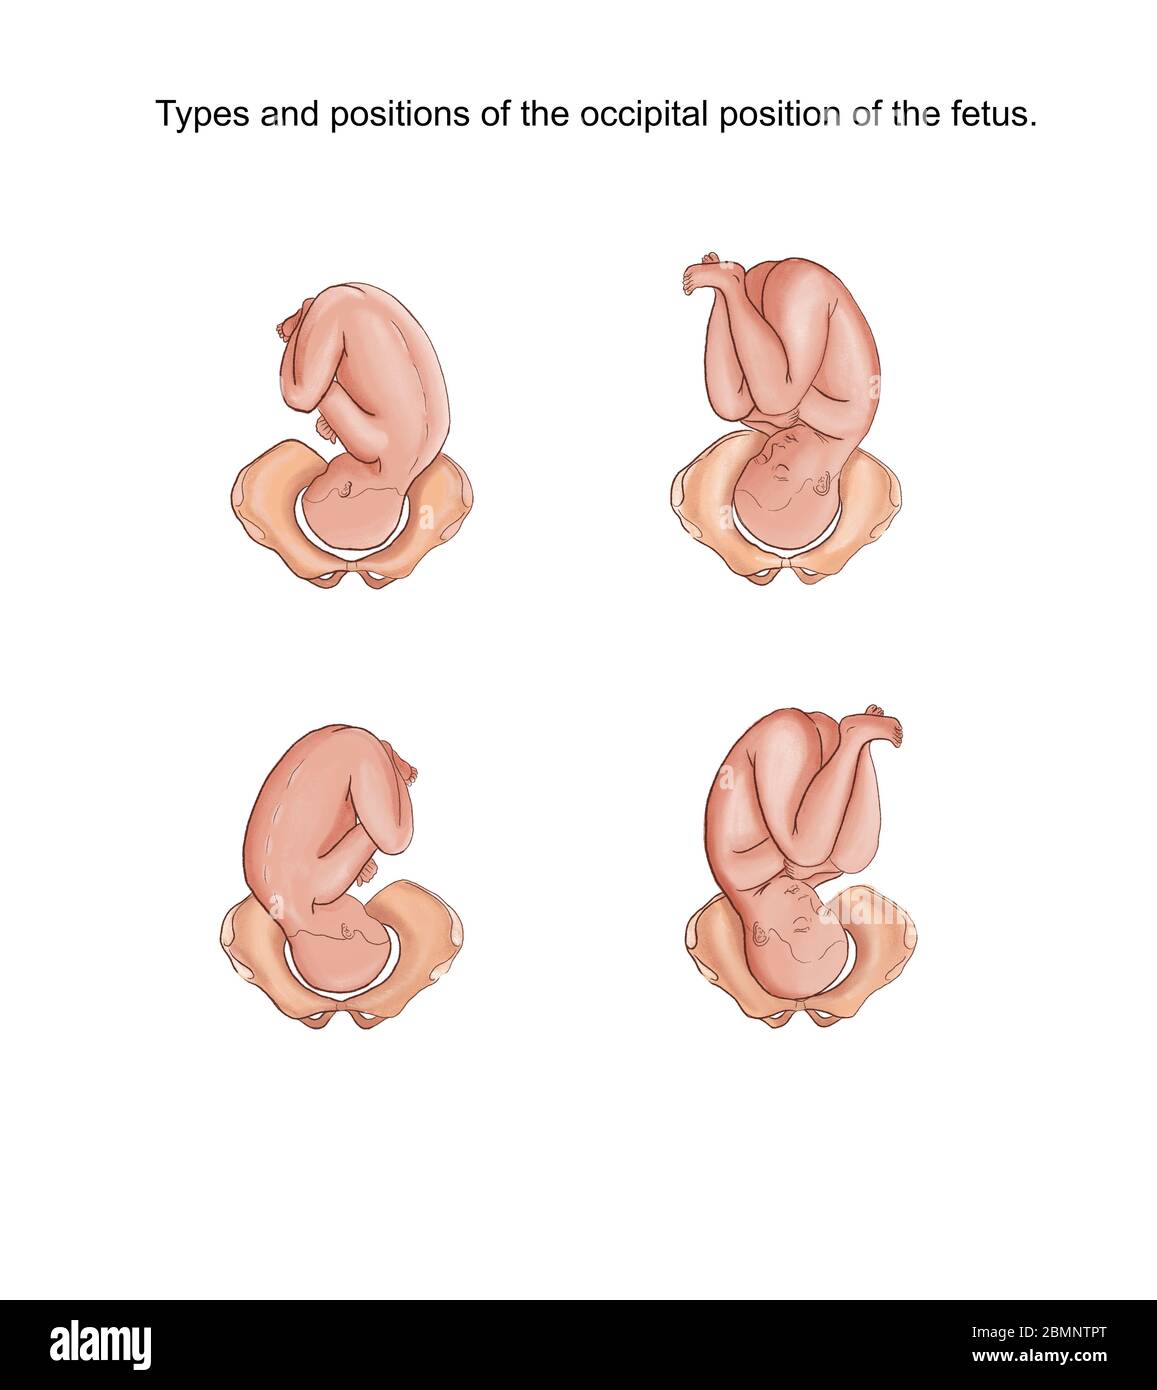 Illustrazione dei tipi e delle posizioni della posizione occipitale del feto Foto Stock